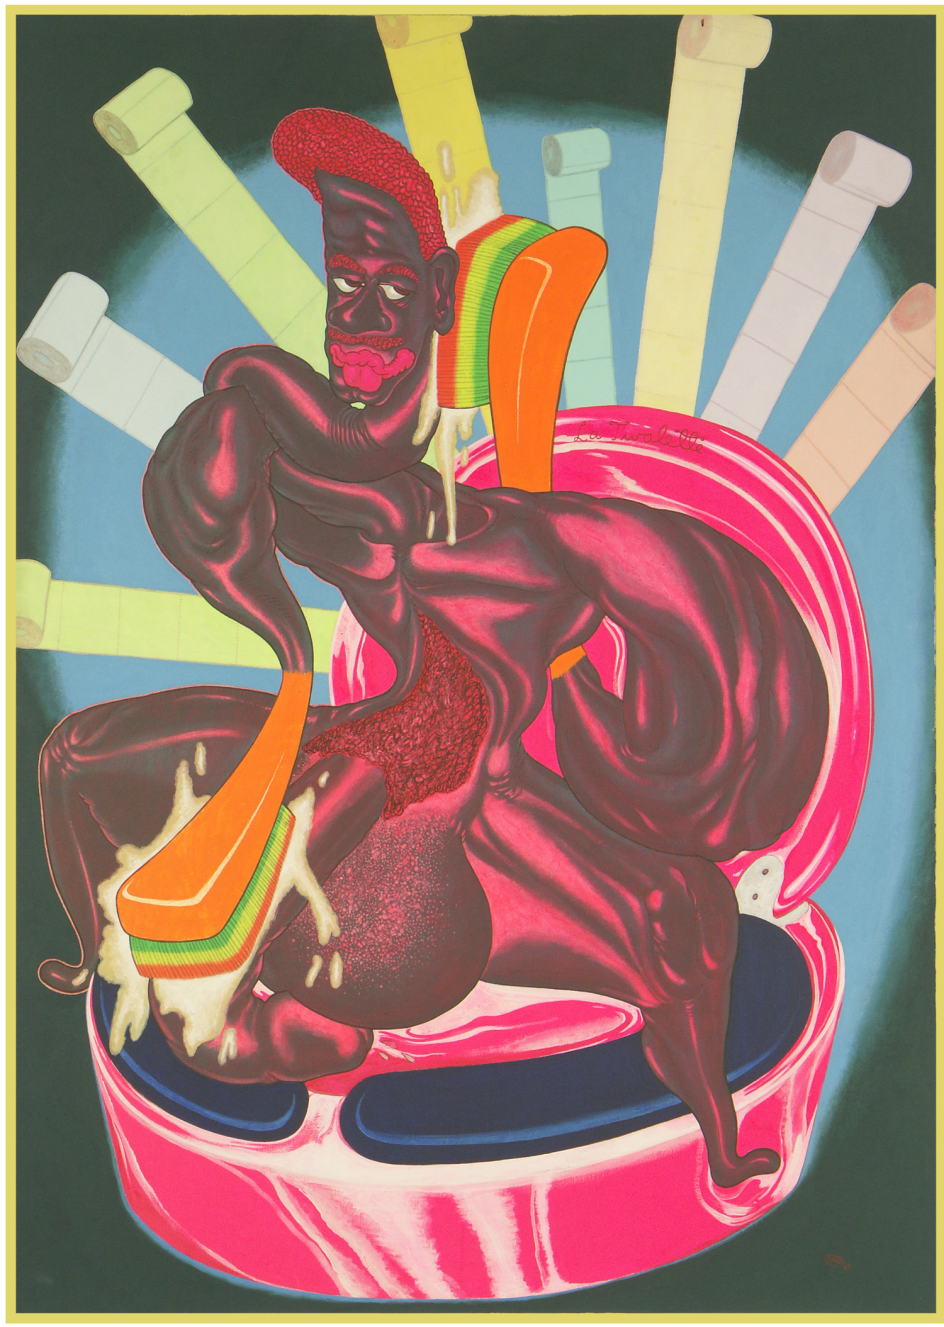 Peter Saul, La twalette, 1969, huile sur toile, 176 x 120 x 3 cm. Collection [mac] musée d’art contemporain, Marseille, ©Peter Saul; photo: Jean-Christophe Lett ; courtesy [mac]